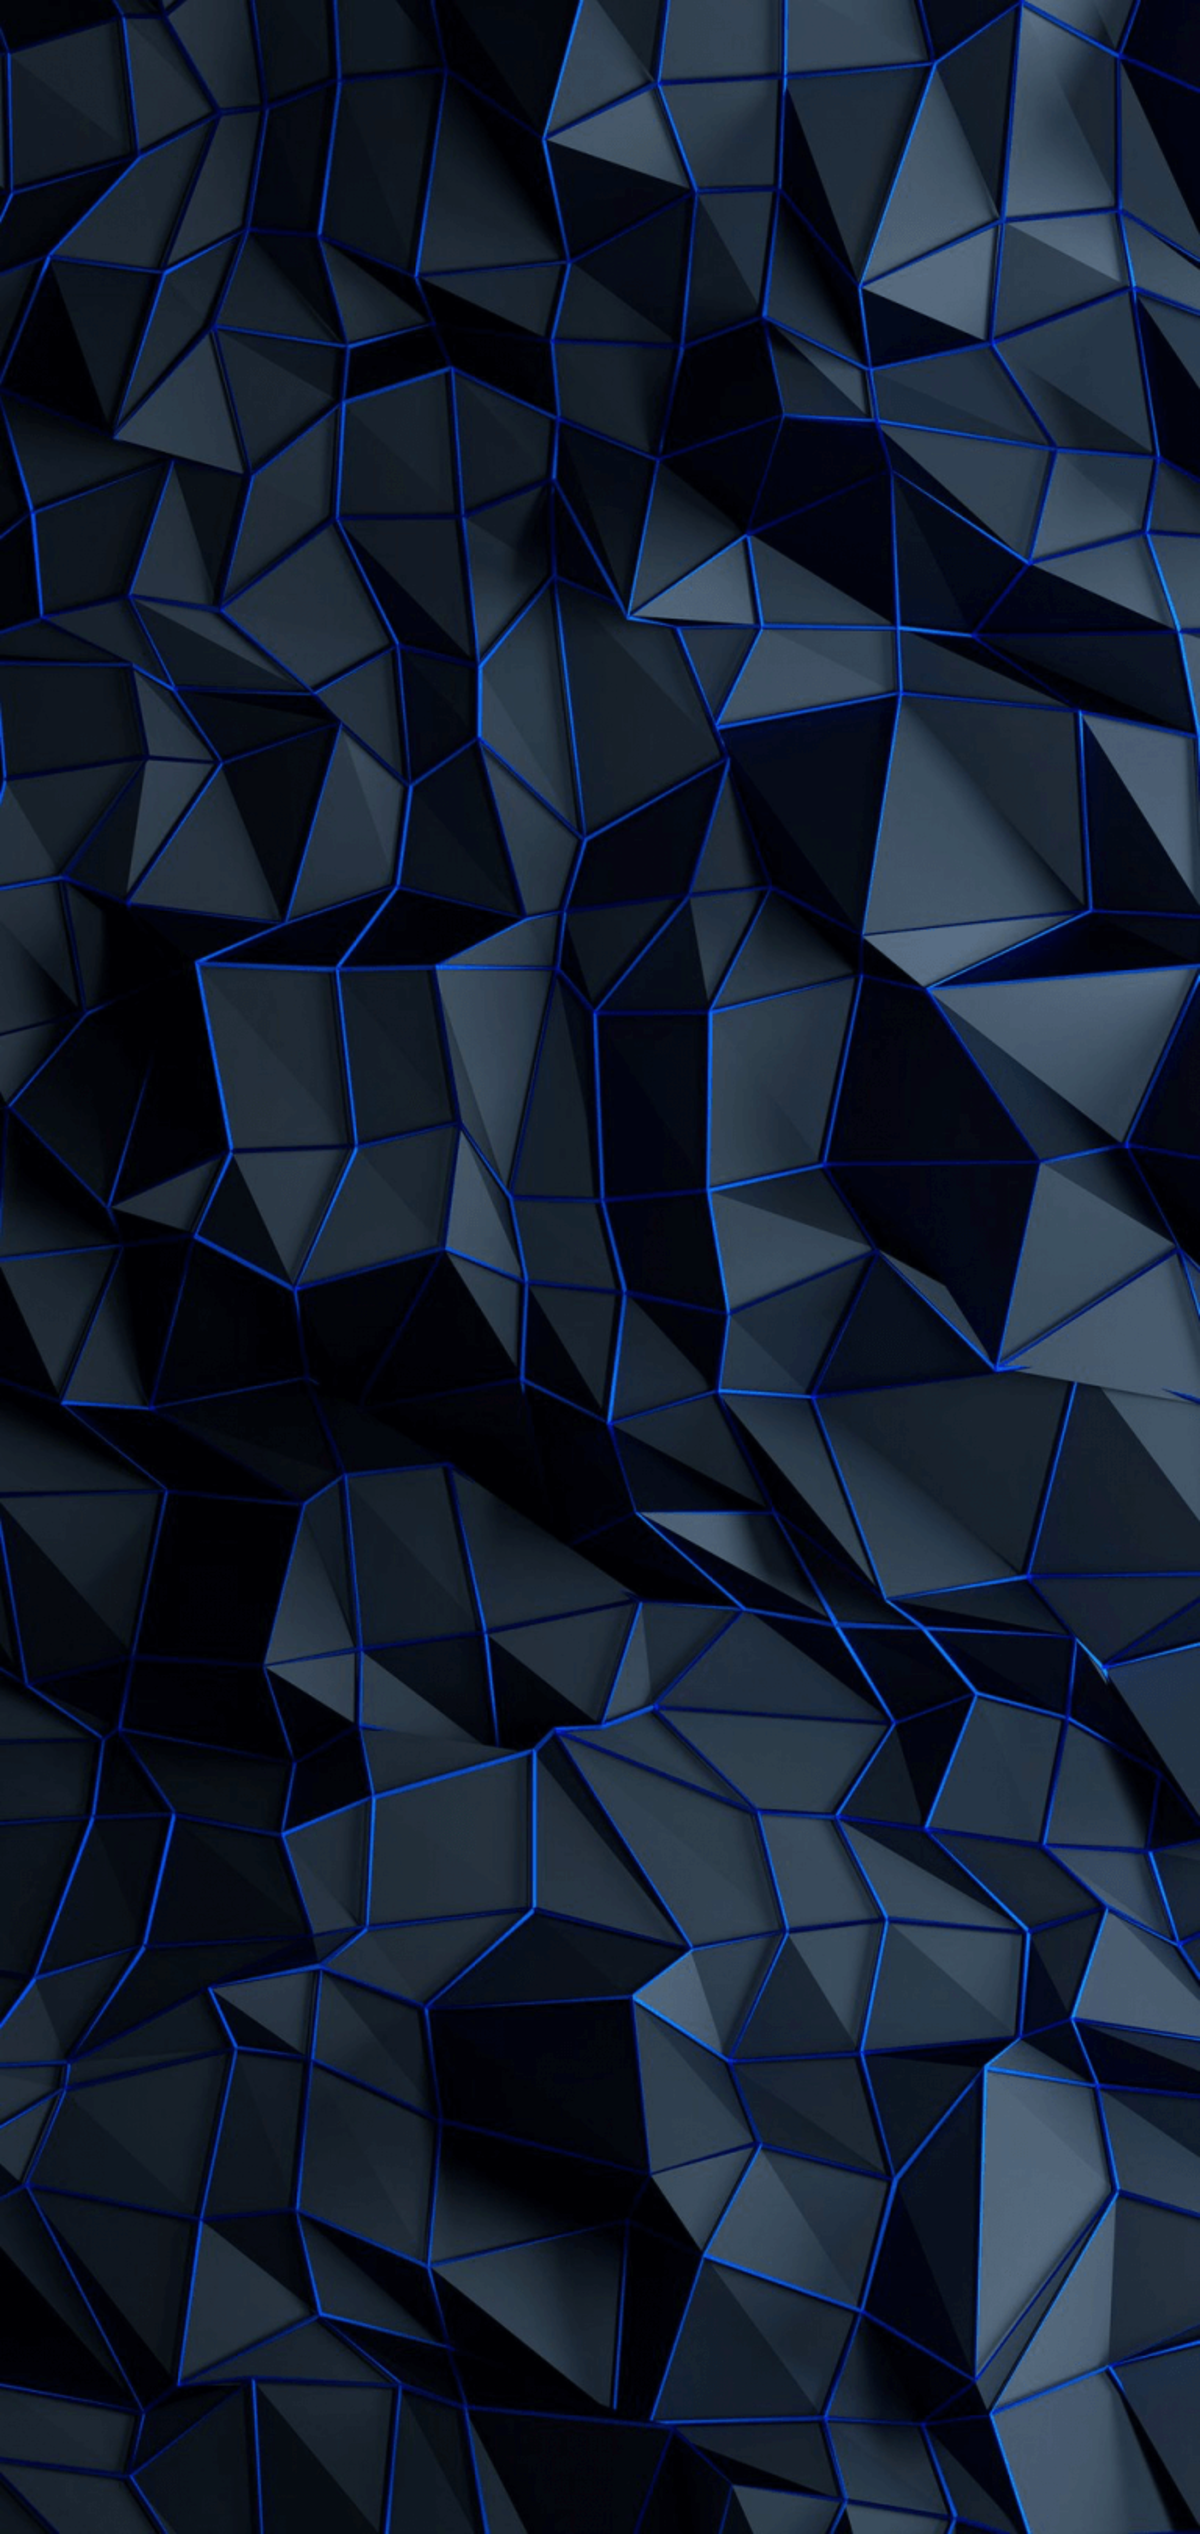 La mejor colección de wallpapers abstractos y geométricos para tu iPhone